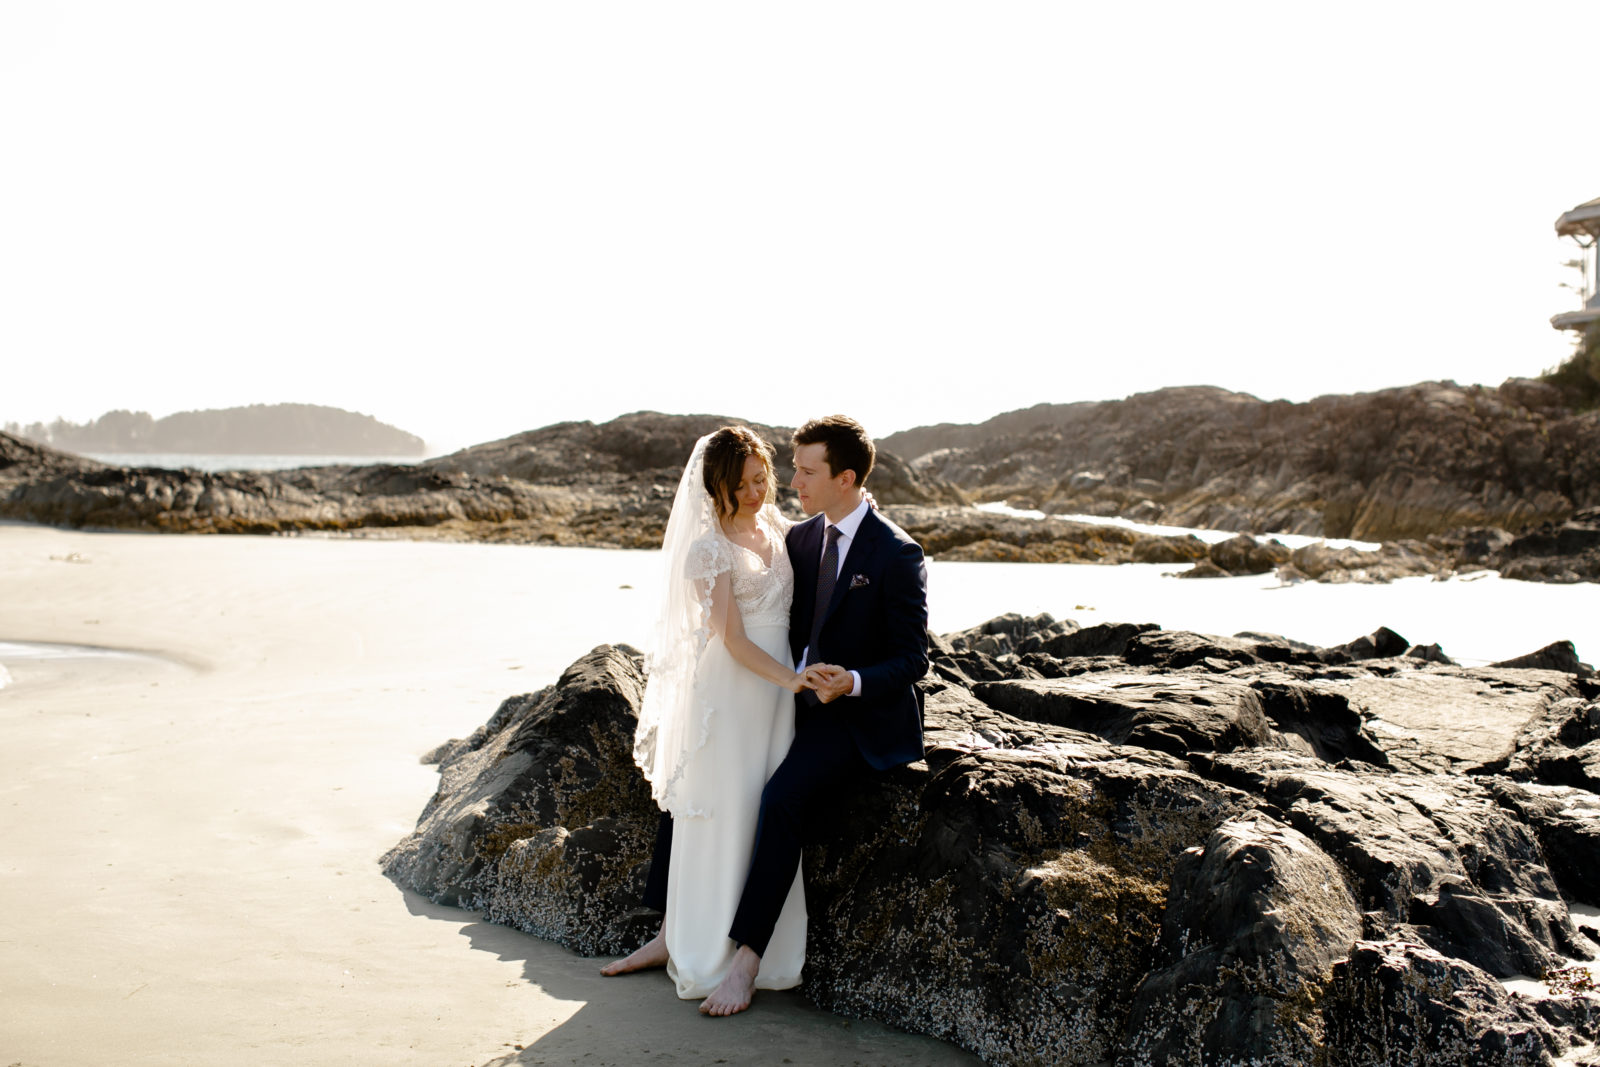 Wickanninish Wedding Photographer, Tofino Wedding Photographer,
Vancouver Island Wedding Photographer